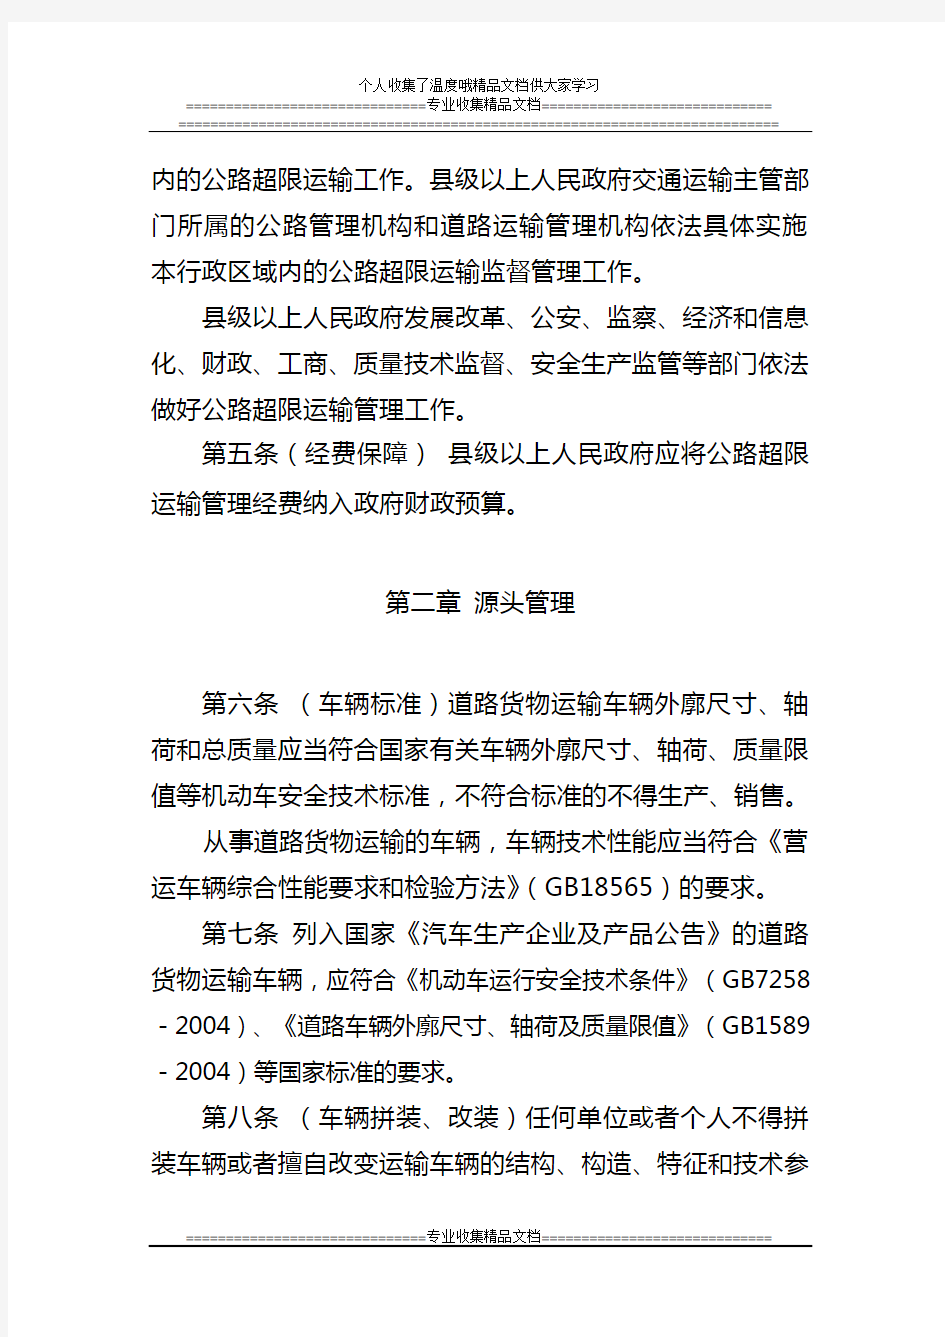 浙江省公路超限运输管理办法2012.06.25